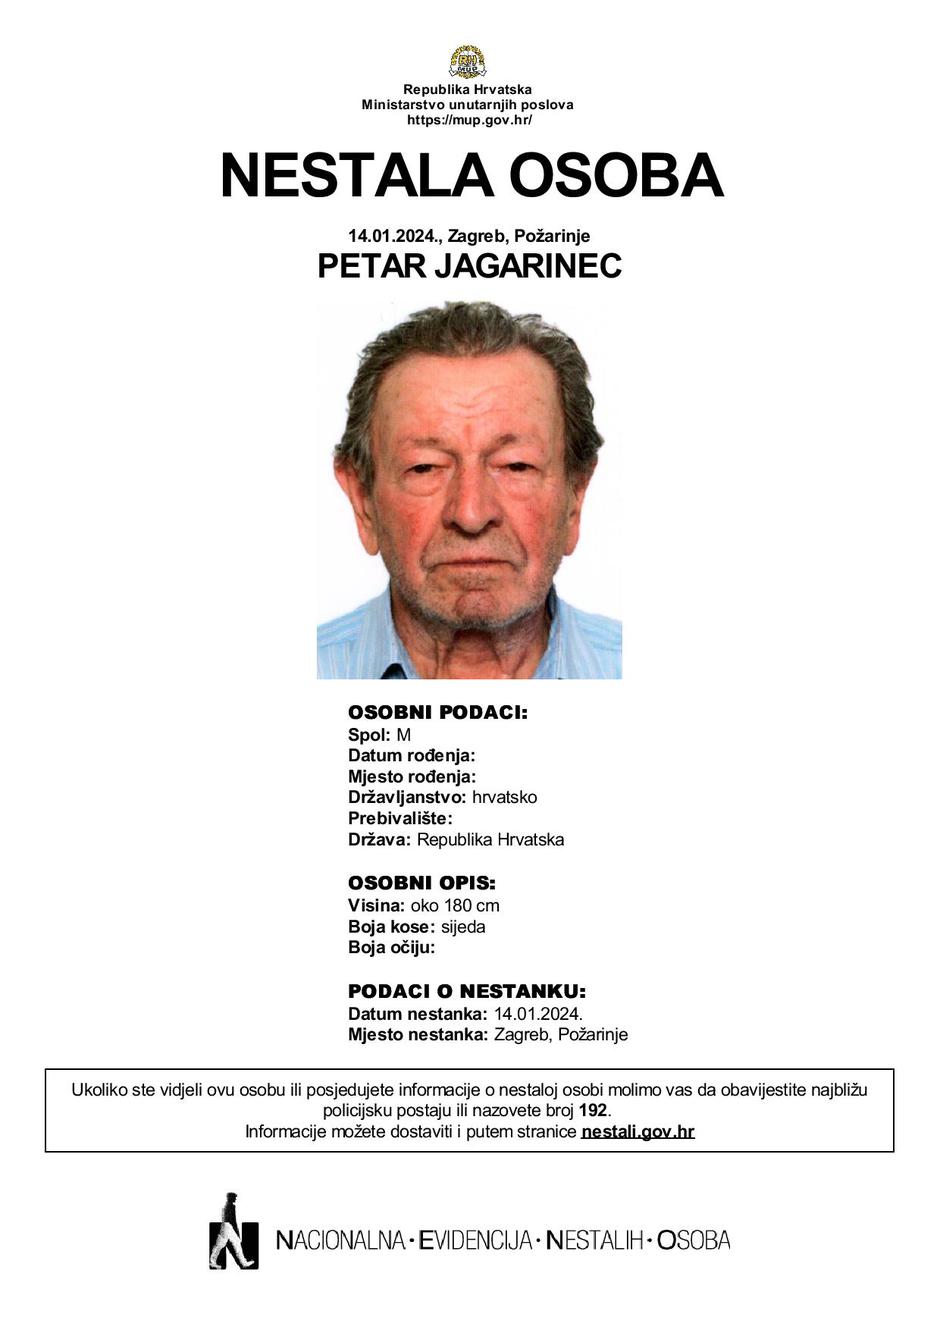 Petar Jagarinec